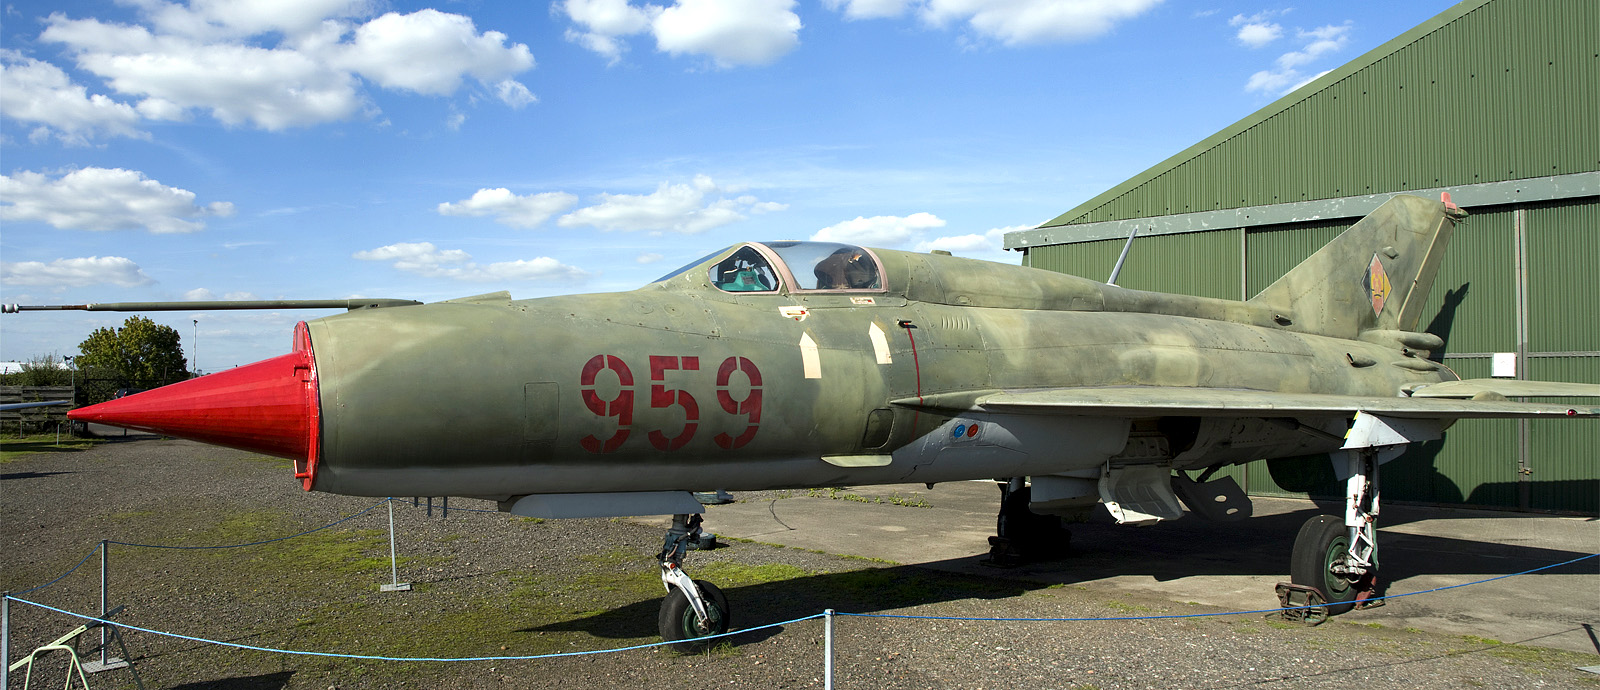 Micoyan-Gurevich-MiG21SPS-959-East-German-Air-Force-panorama.jpg